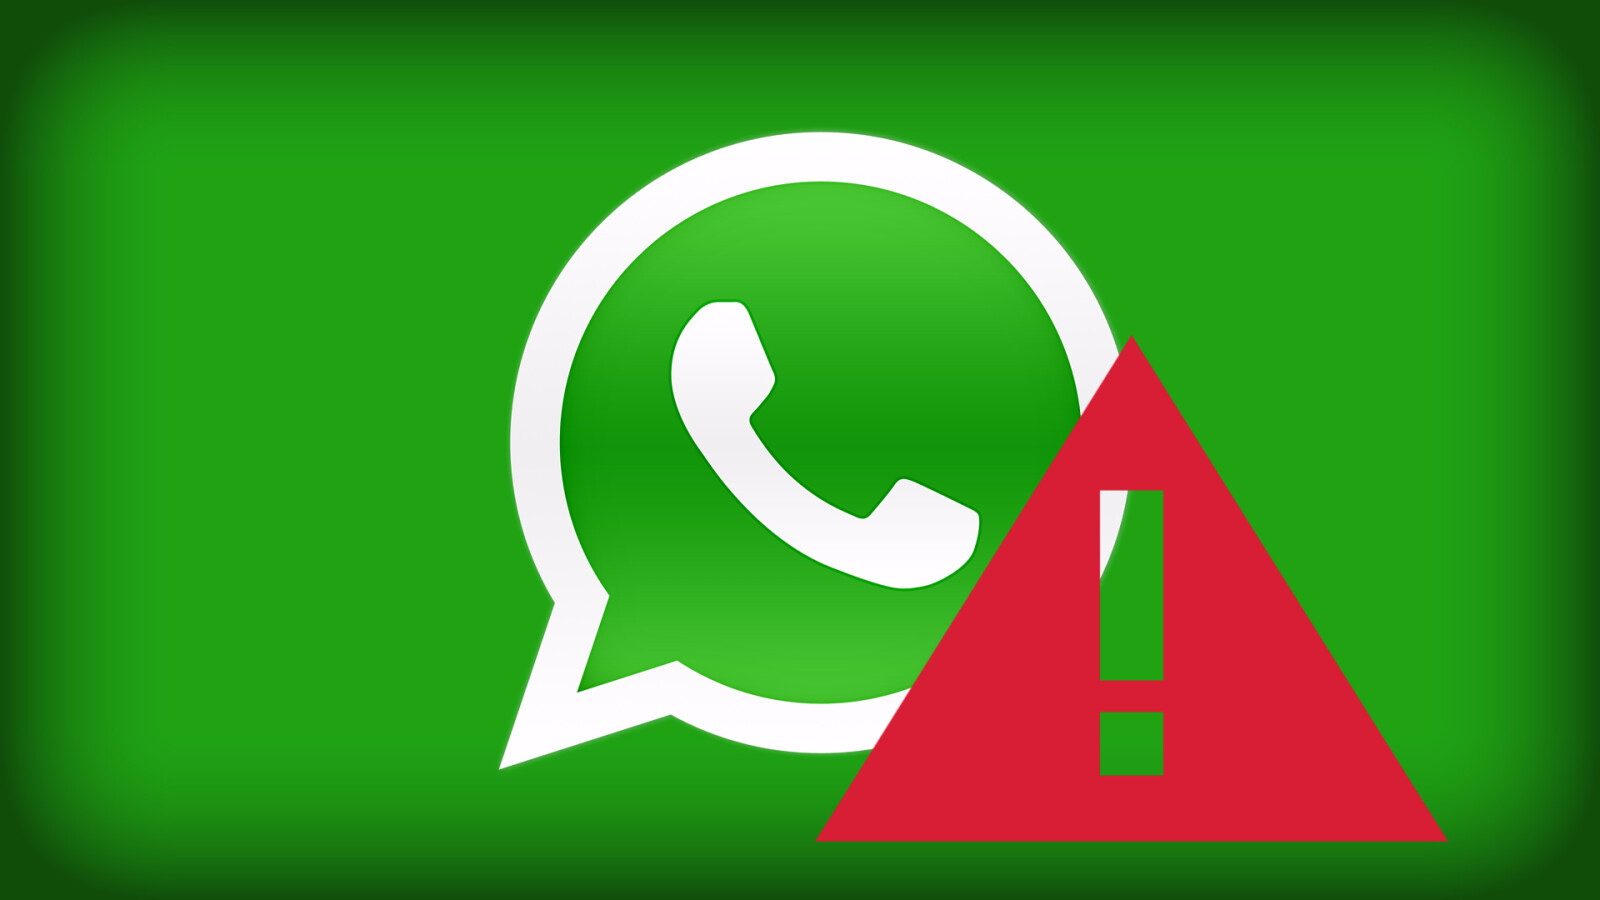 WhatsApp: Lösungen für häufige Probleme mit dem Messenger ... - 1600 x 900 jpeg 100kB